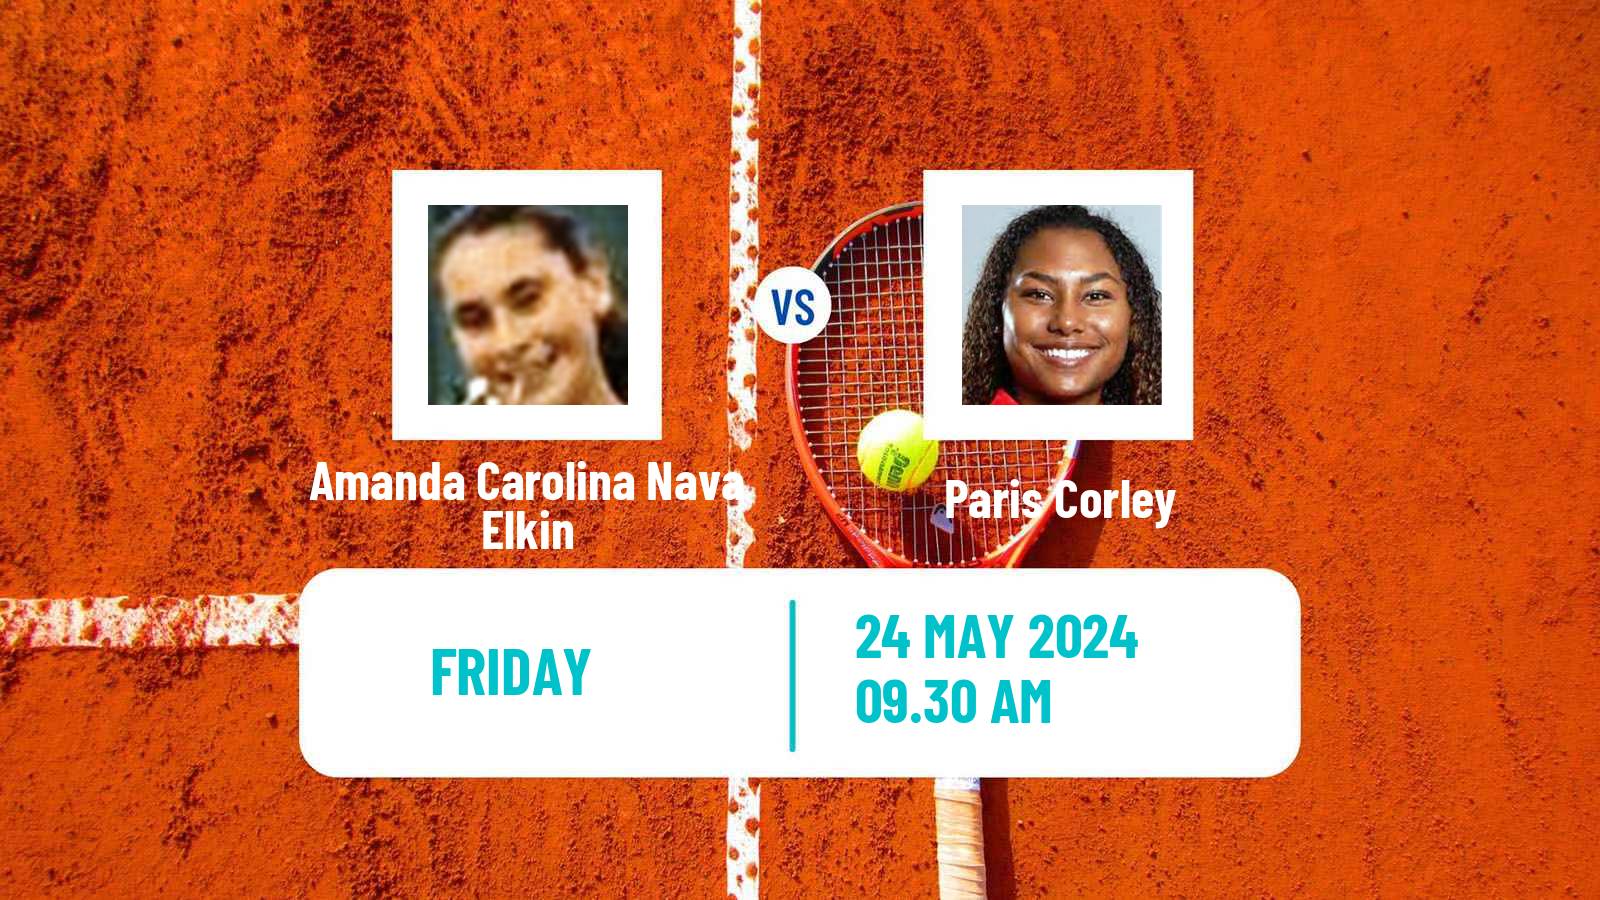 Tennis ITF W35 Santo Domingo 3 Women Amanda Carolina Nava Elkin - Paris Corley